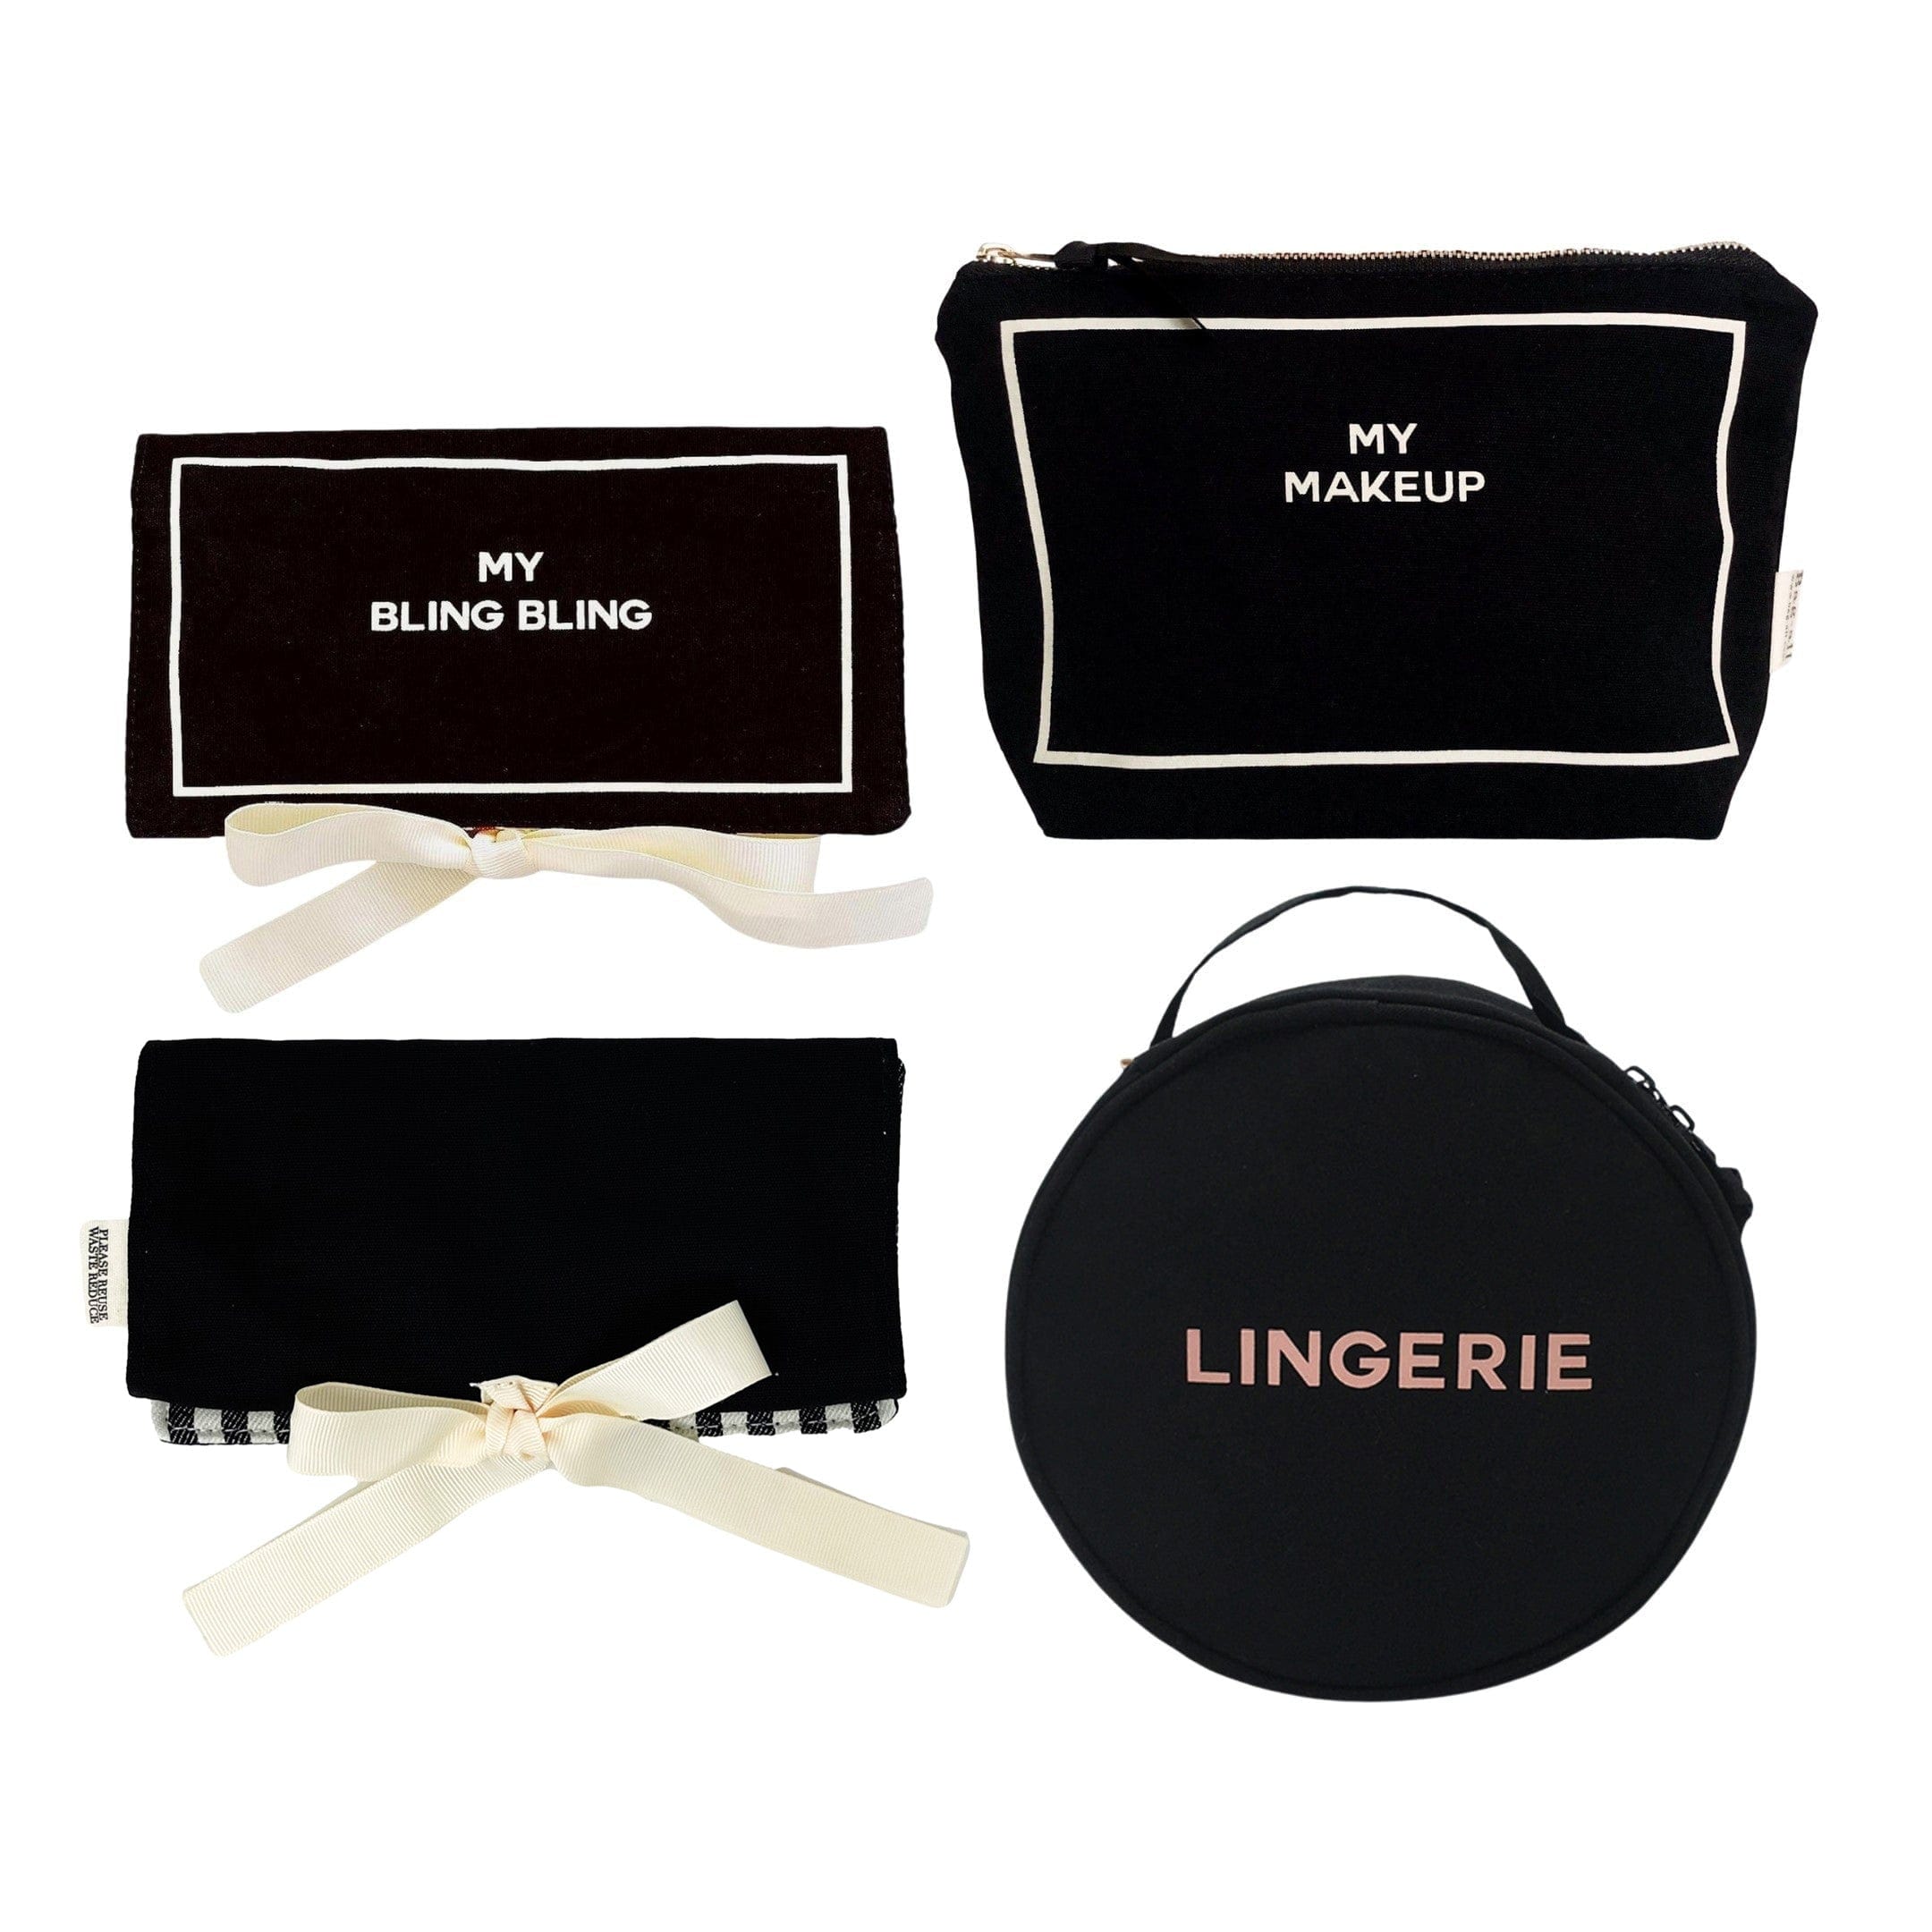 Most Popular Cases For Her, Black 3-pack - Deal Gift Set - Bag-all